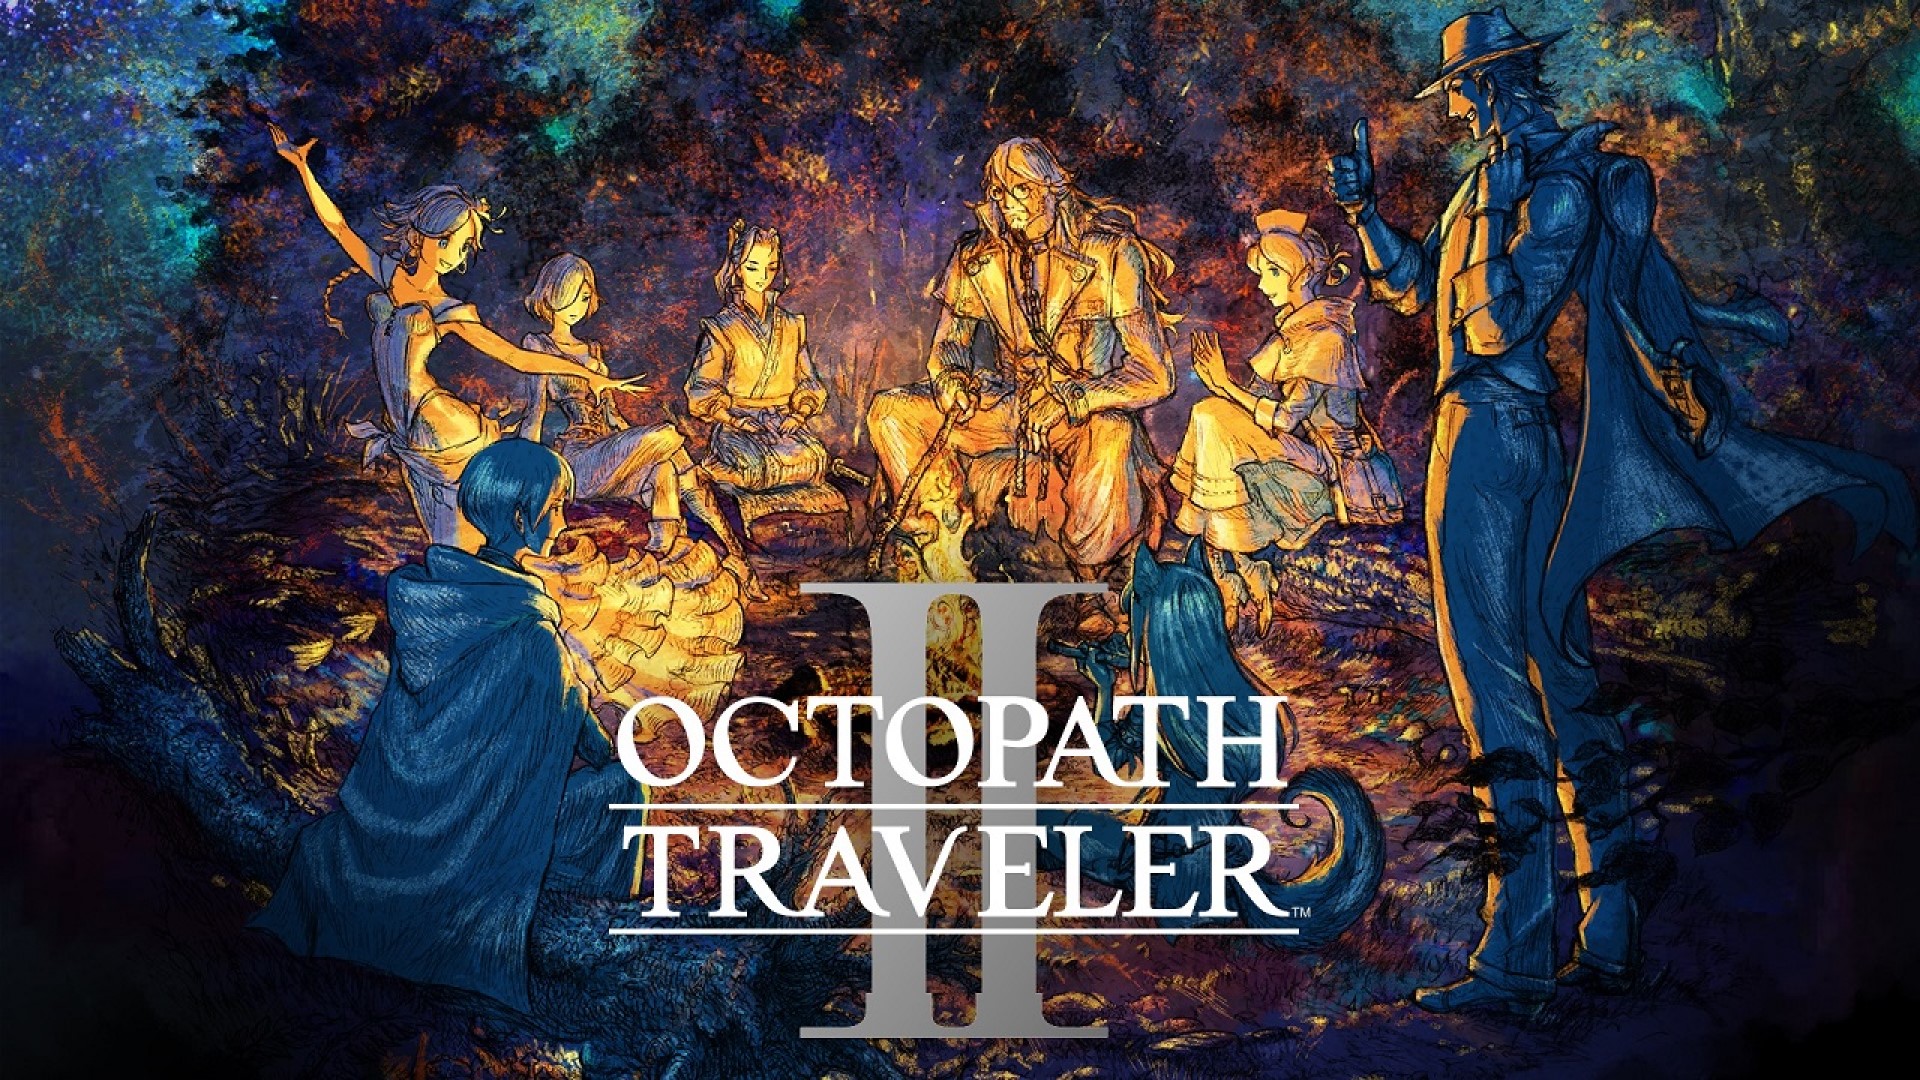 فروش بازی Octopath Traveler 2 به بیش از یک میلیون نسخه رسید